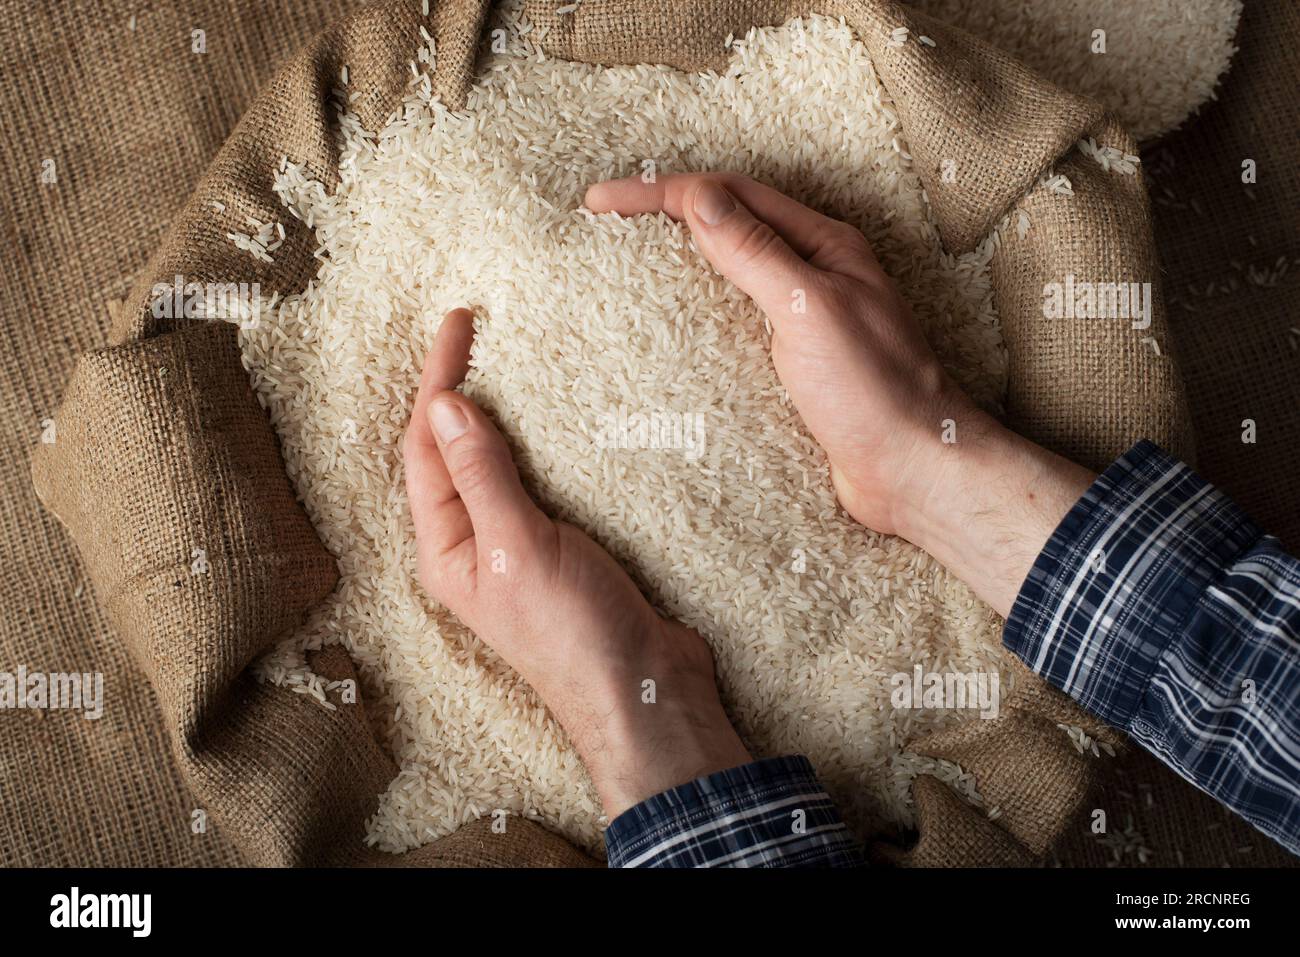 Menschliche Hände halten eine Hand voll Reis über einem Leinensack Stockfoto